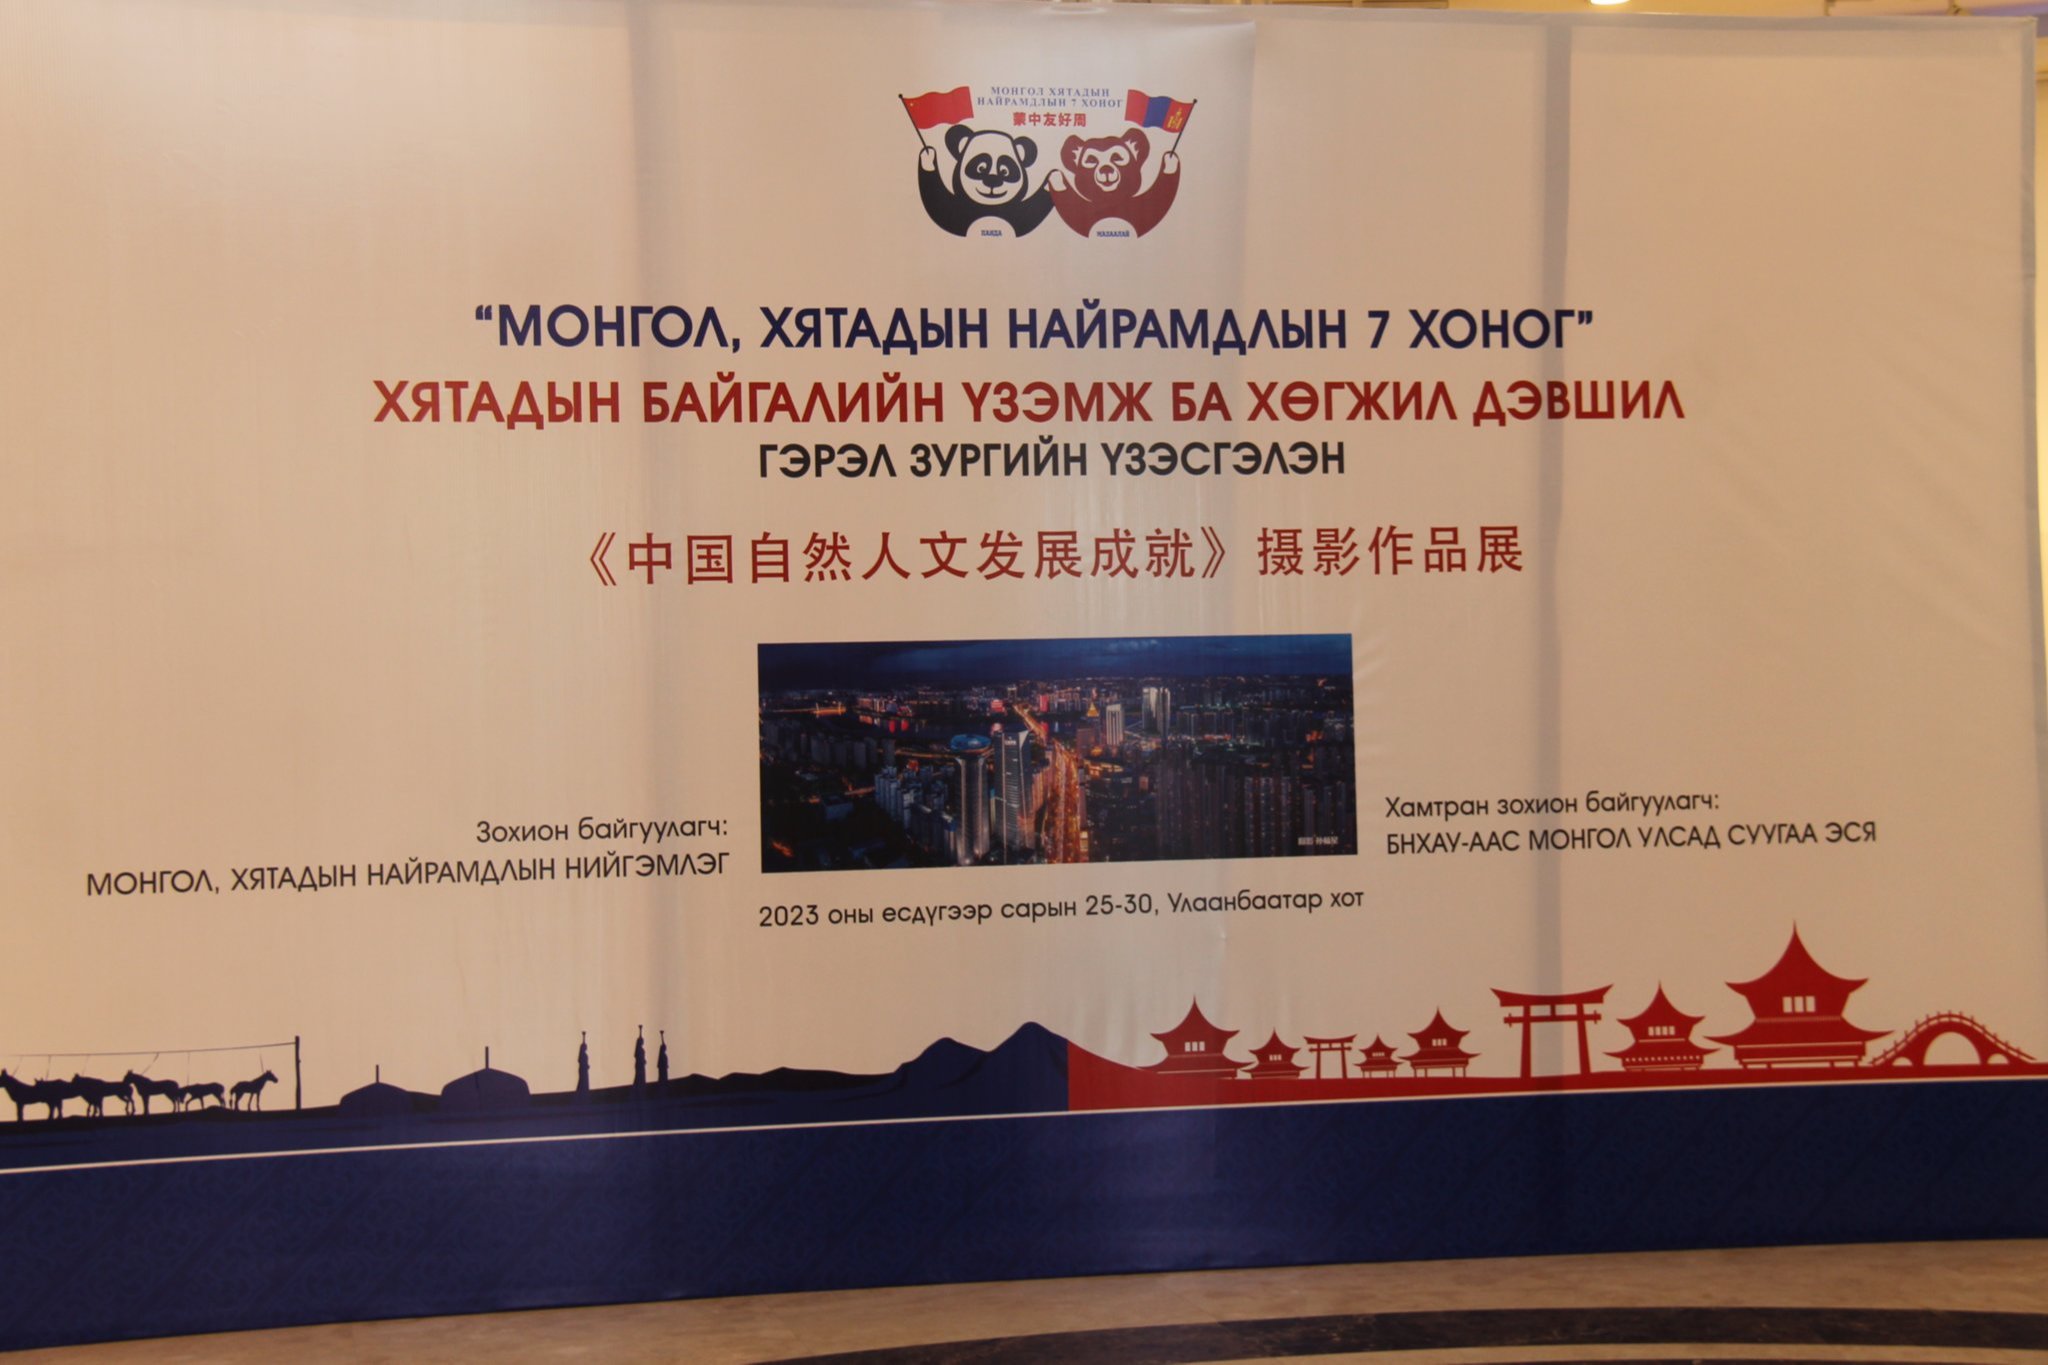 Фото: Монгол, Хятадын найрамдлын нийгэмлэгийн долоо хоног үргэлжилж байна